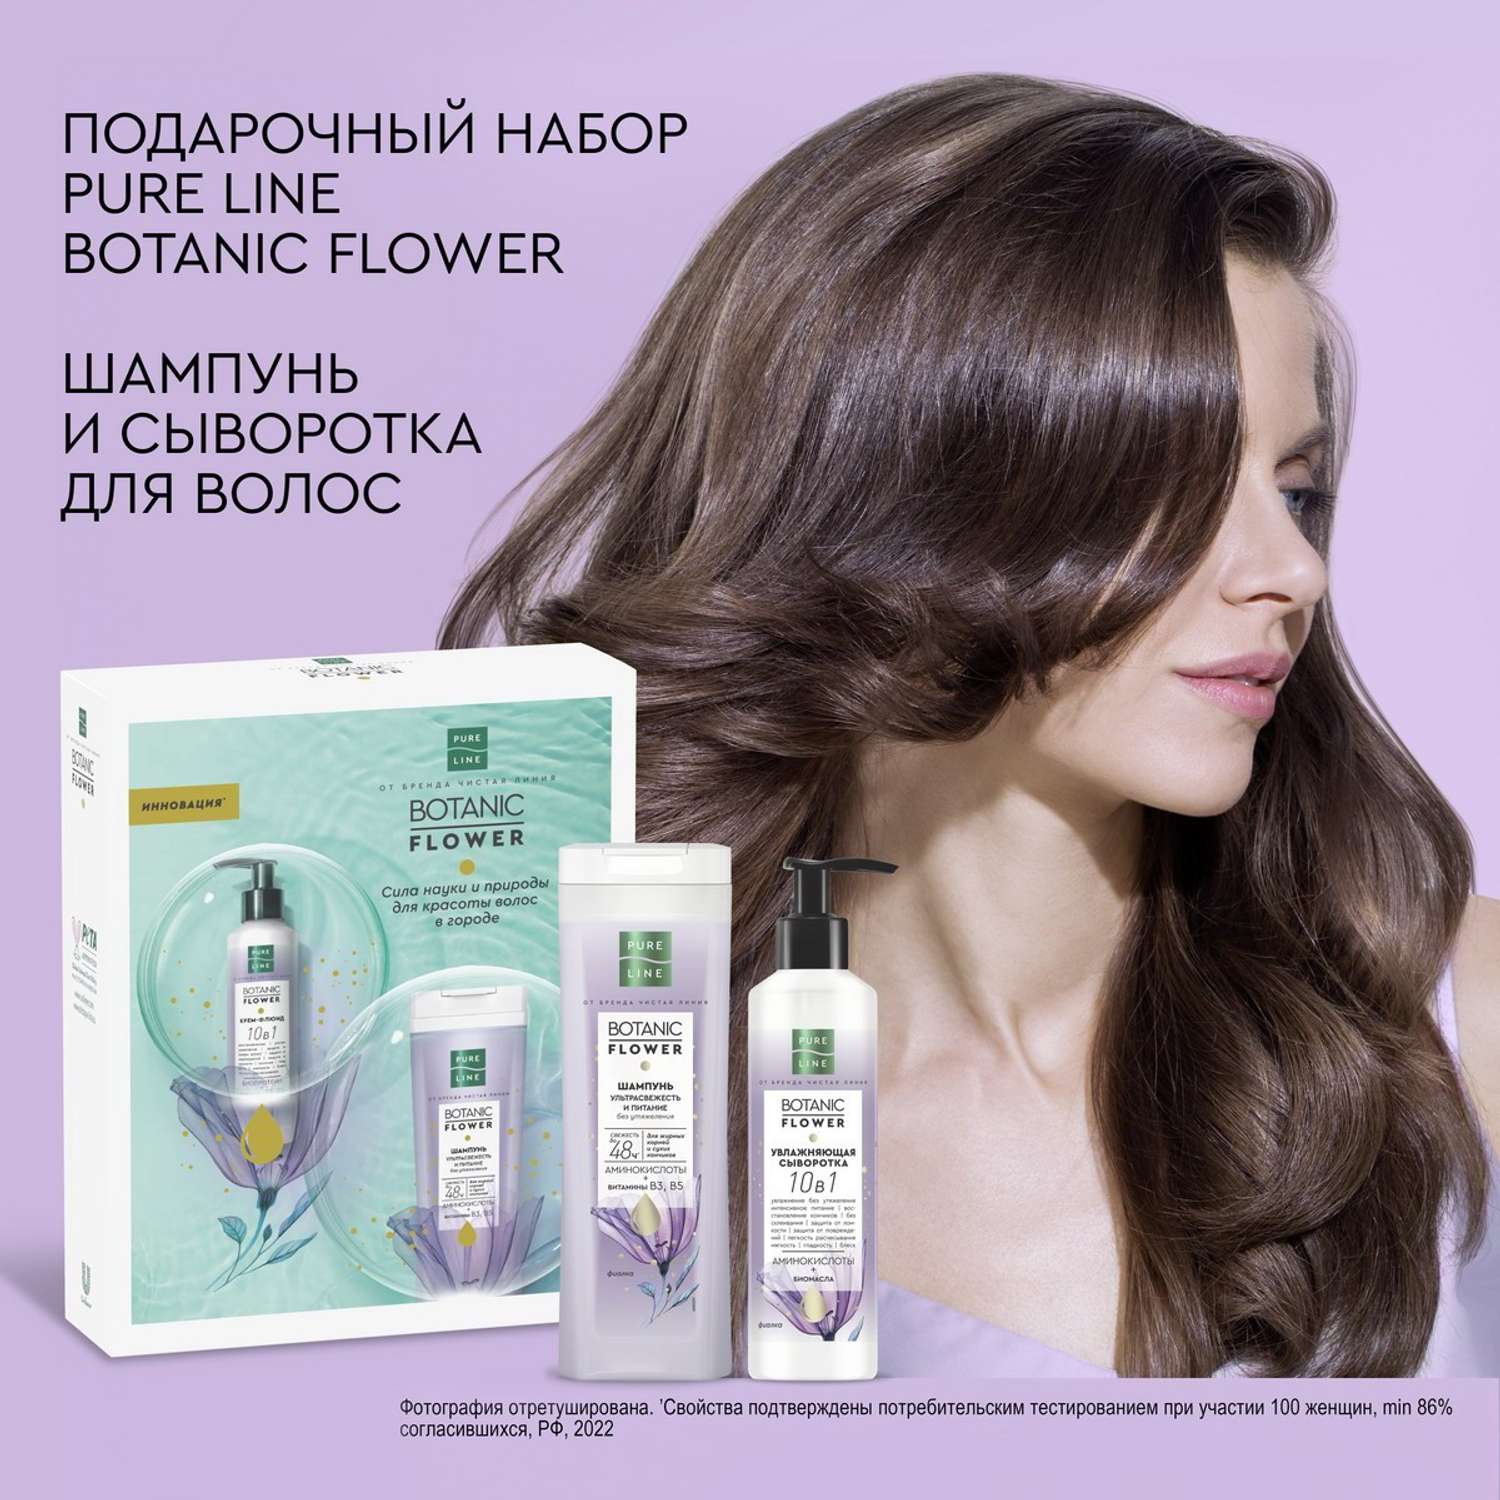 Подарочный набор Чистая линия Pure Line Botanic Flower шампунь и сываротка для волос - фото 6